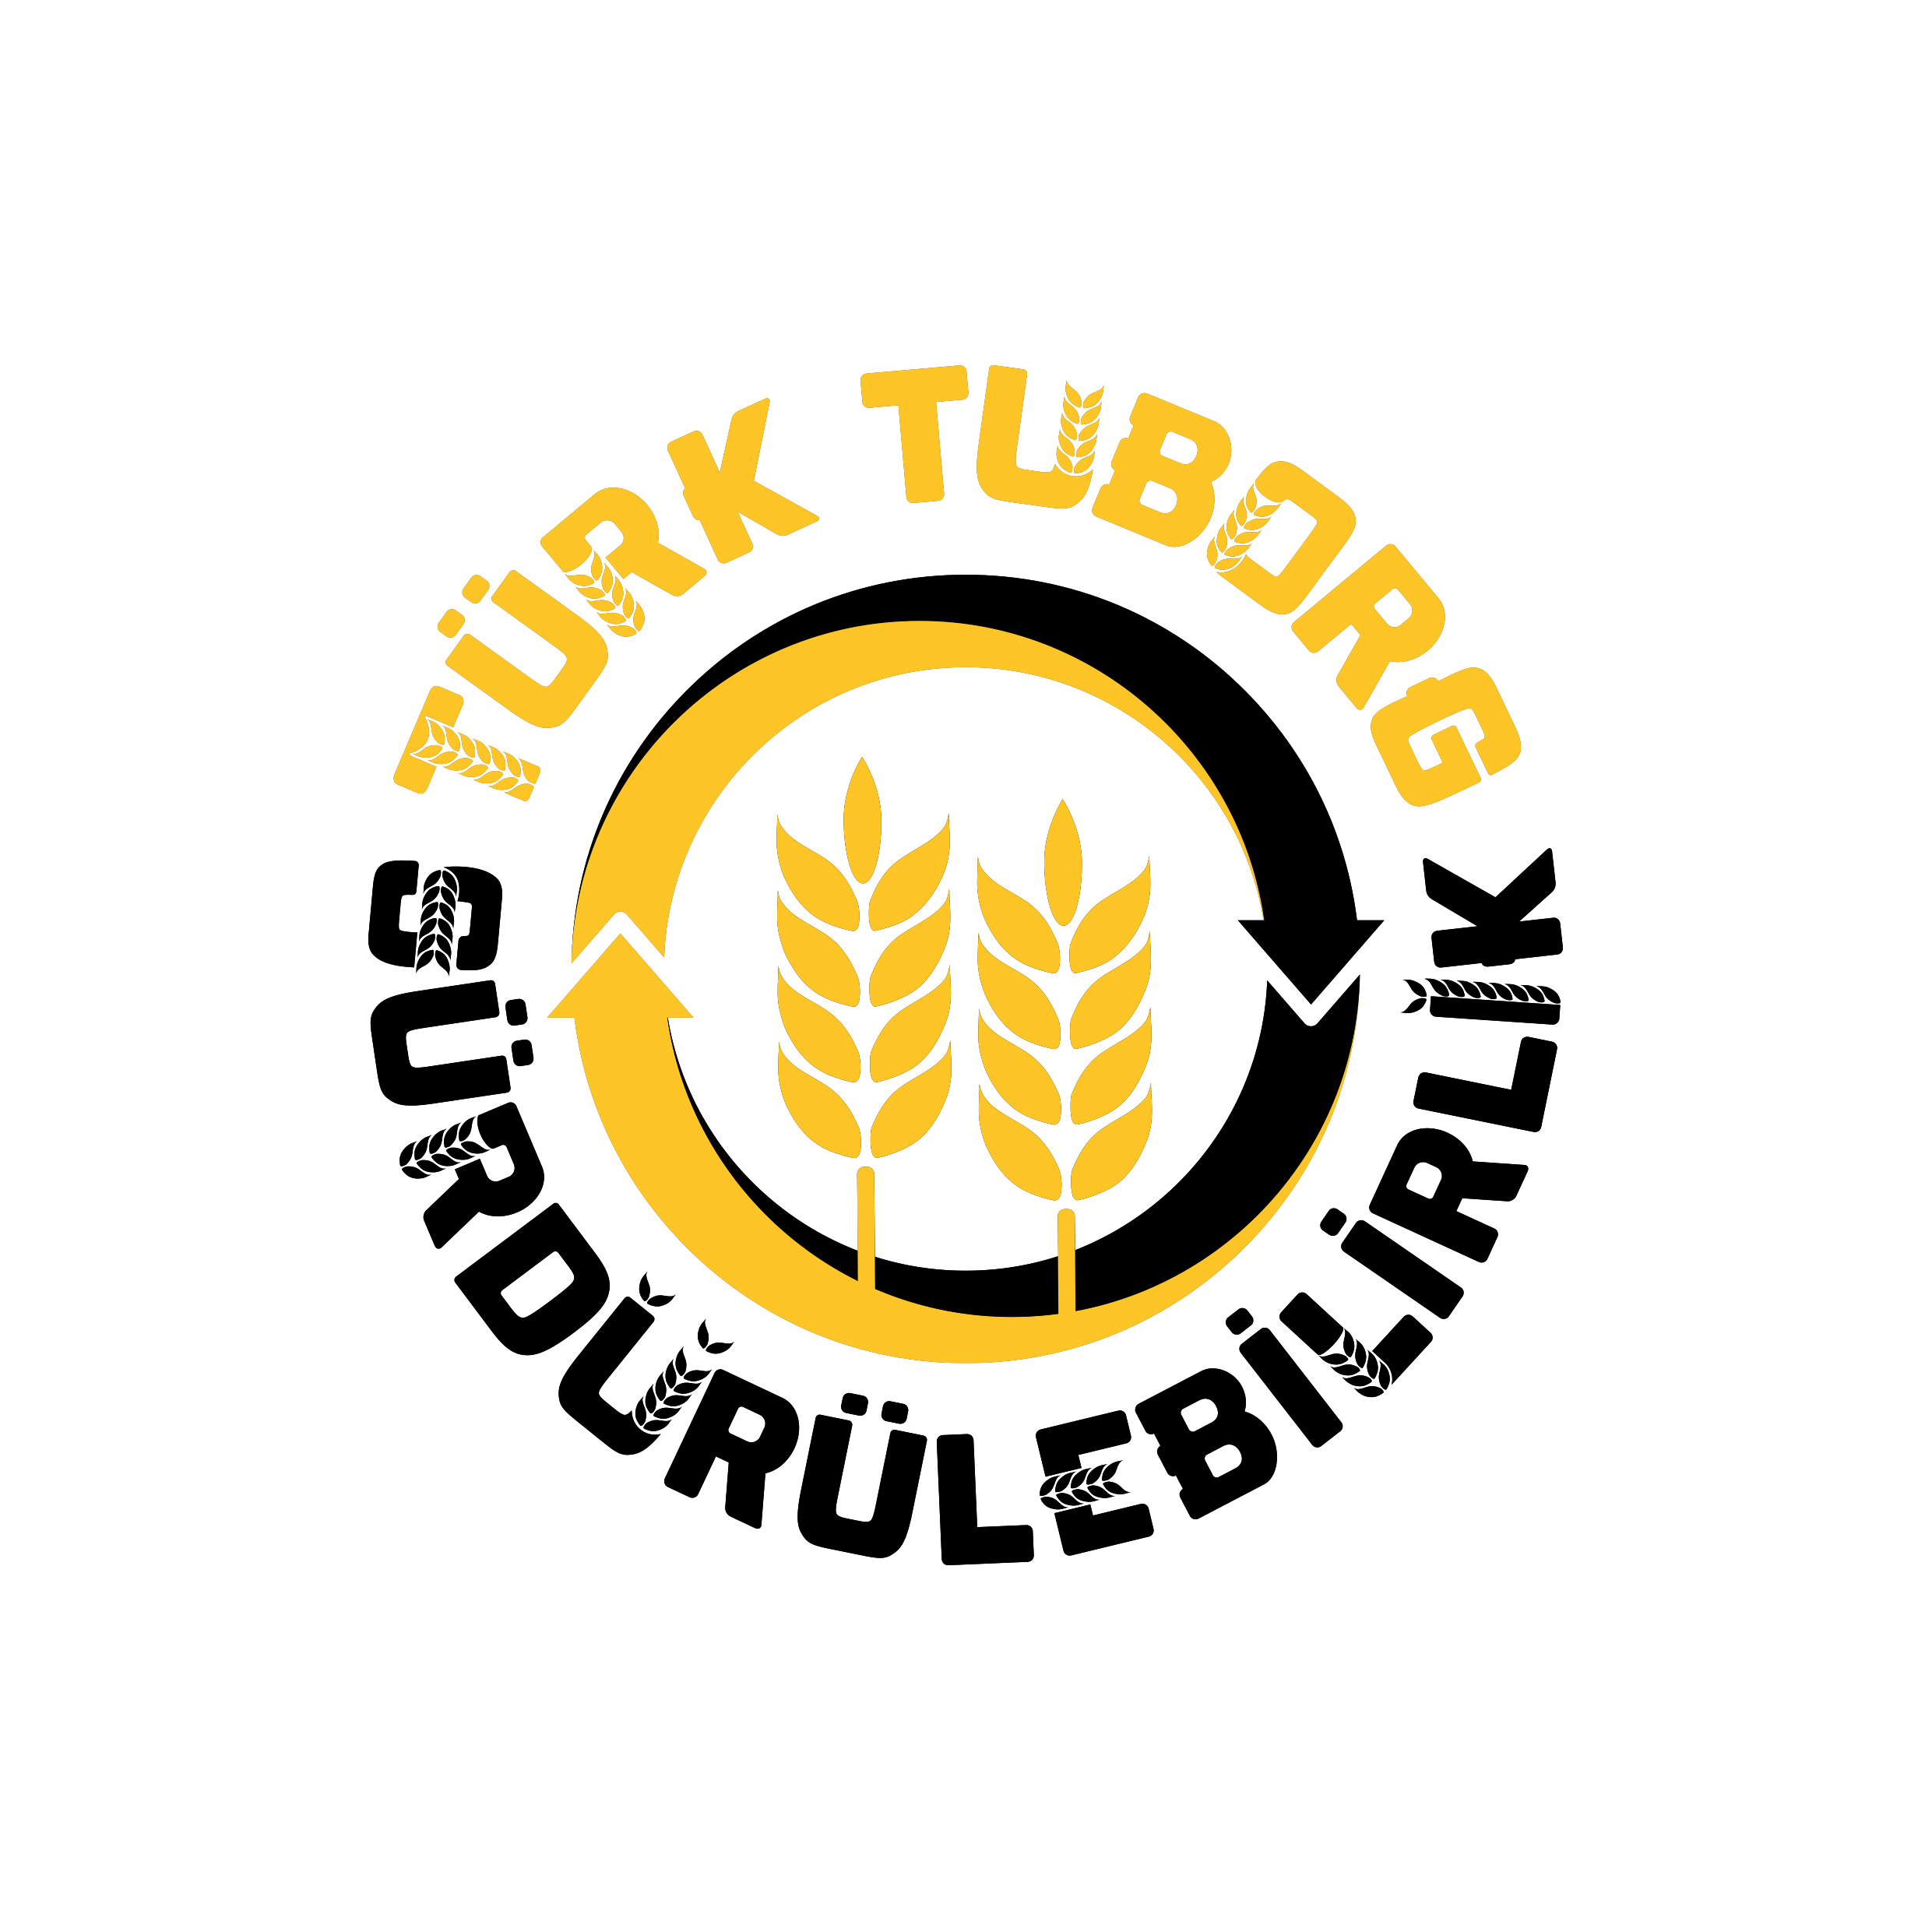 Türk-Tuborg-Surdurulebilirlik-01